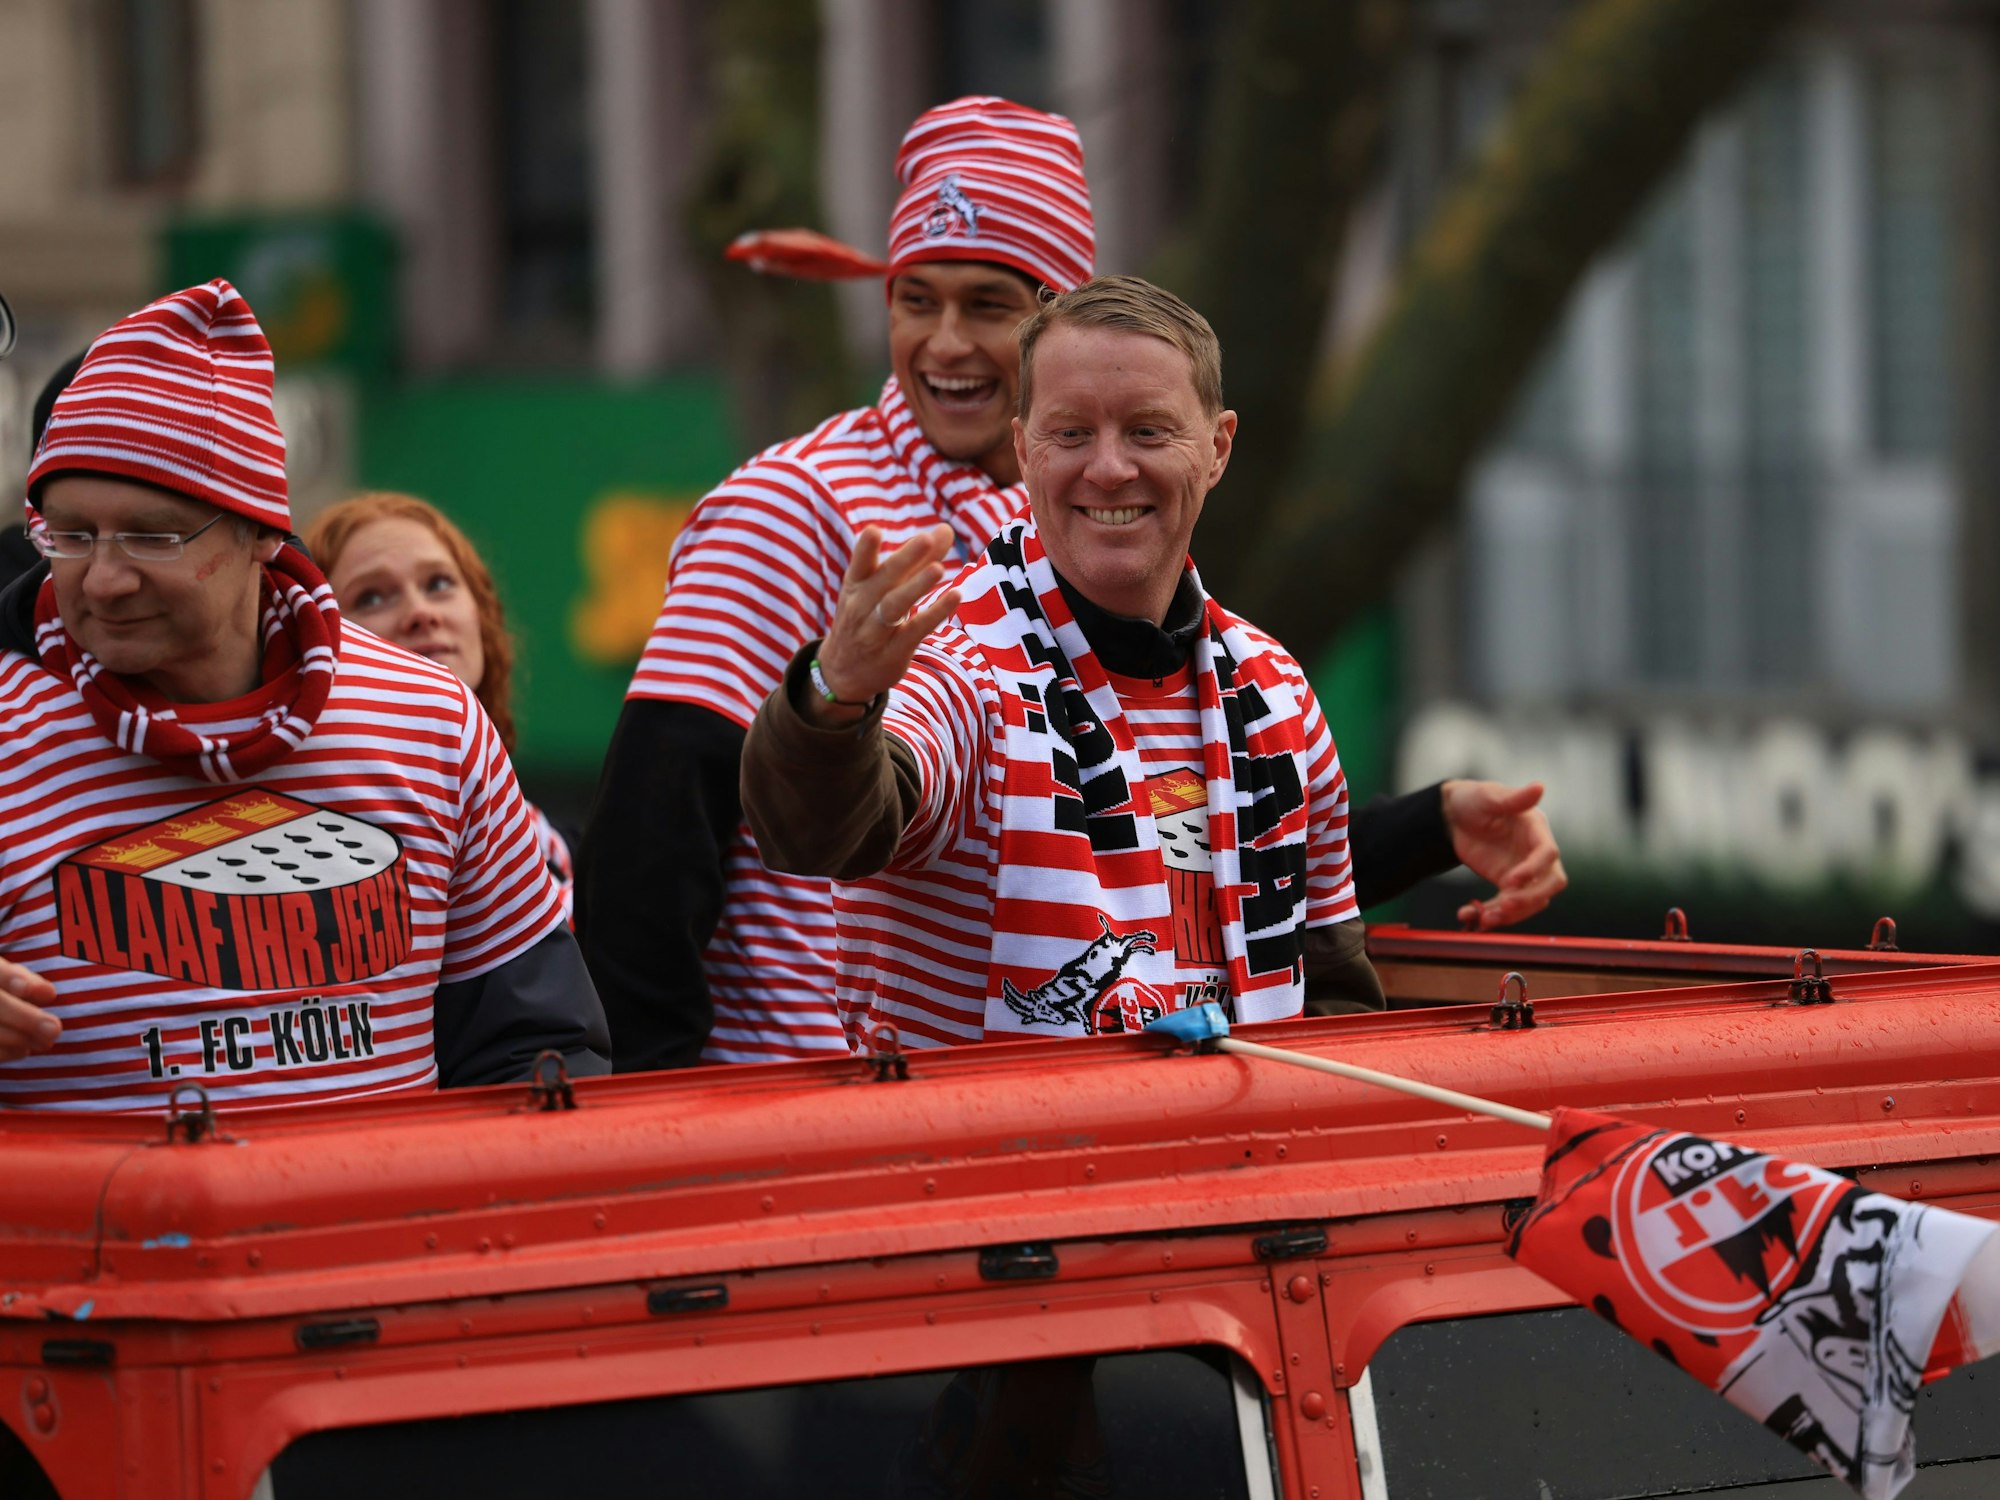 FC-Köln-Trainer Timo Schultz winkt von einem Karnevalswagen.